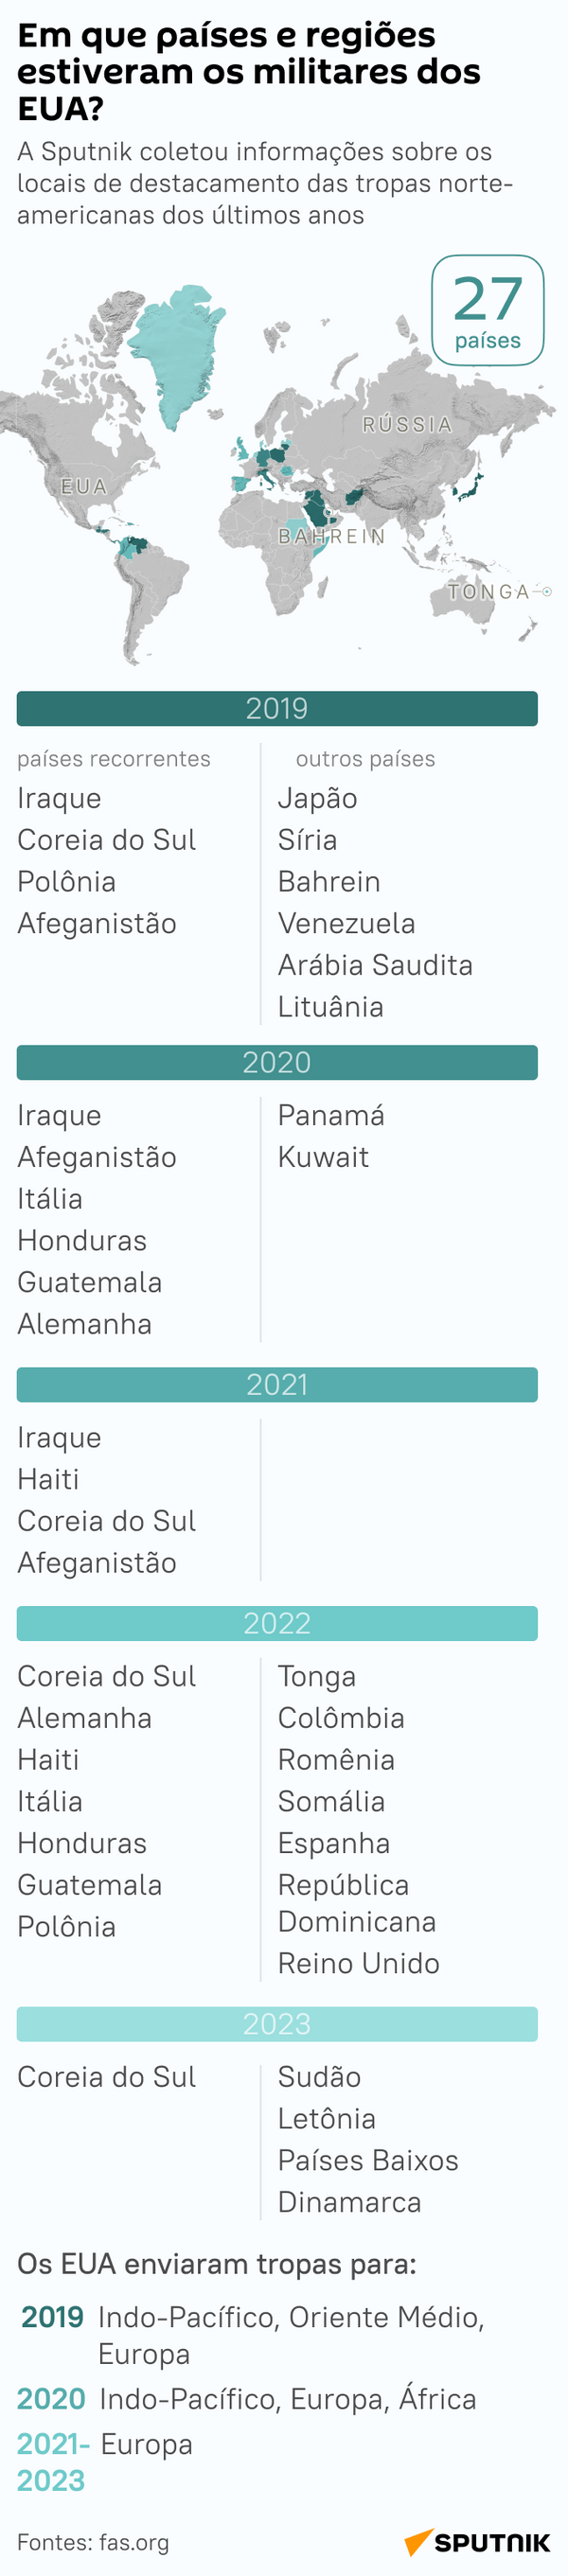 Expansão militar dos EUA: em quais países estão as tropas americanas - Sputnik Brasil